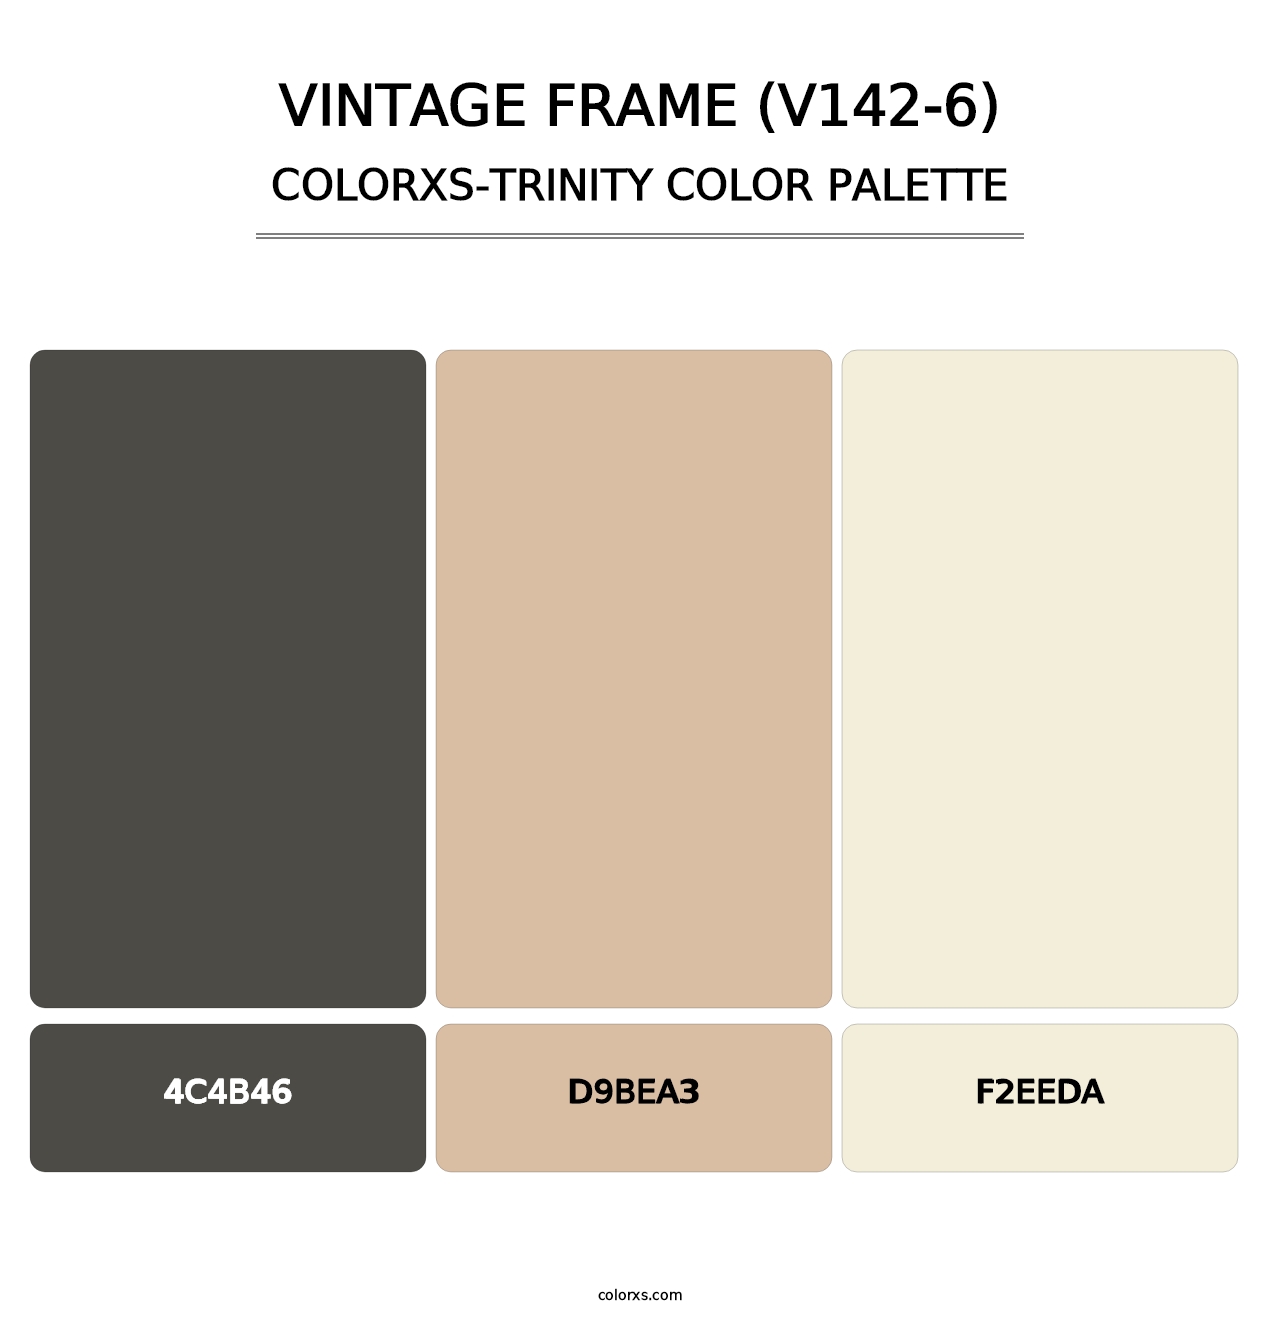 Vintage Frame (V142-6) - Colorxs Trinity Palette